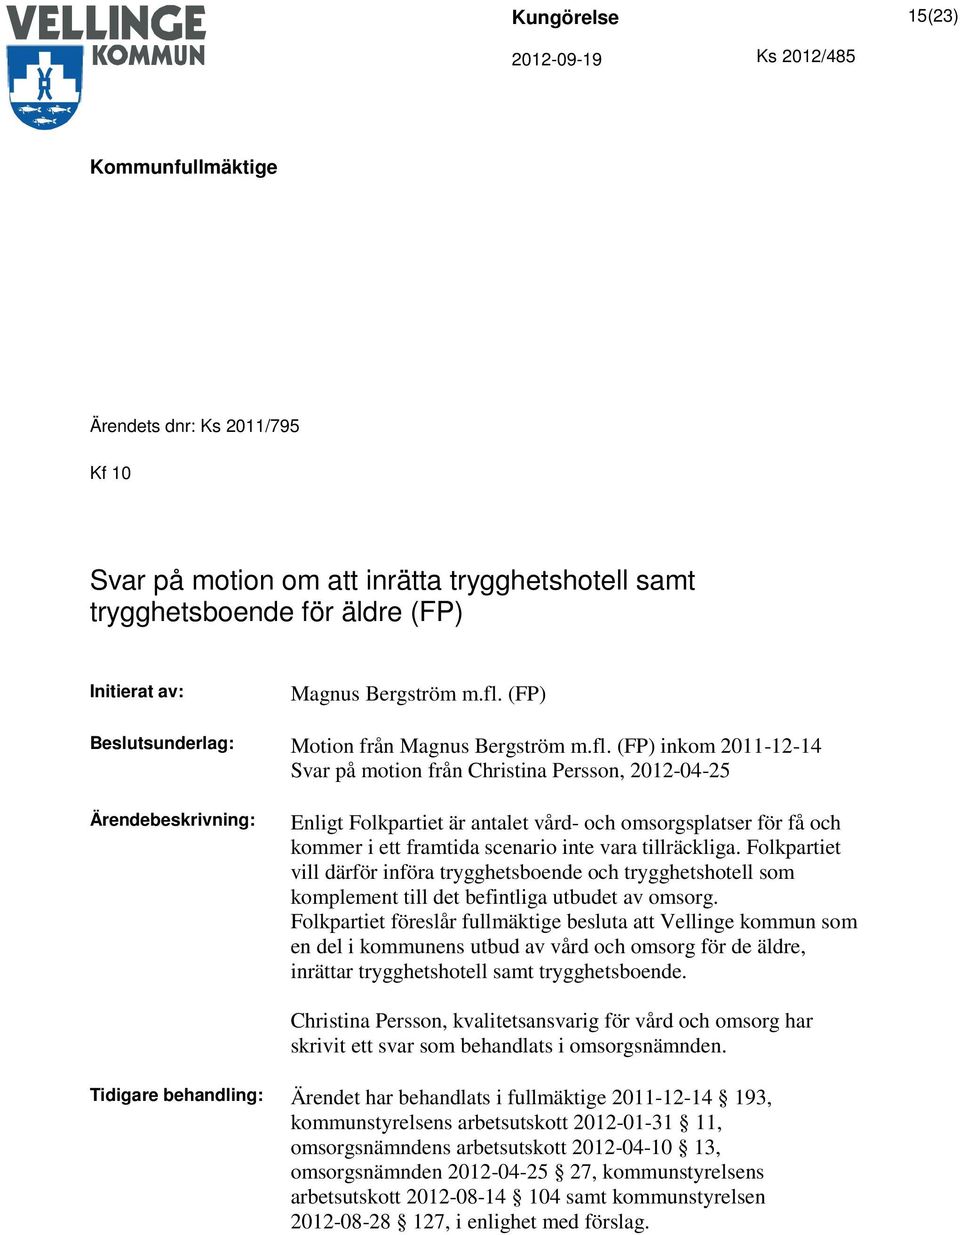 (FP) inkom 2011-12-14 Svar på motion från Christina Persson, 2012-04-25 Enligt Folkpartiet är antalet vård- och omsorgsplatser för få och kommer i ett framtida scenario inte vara tillräckliga.